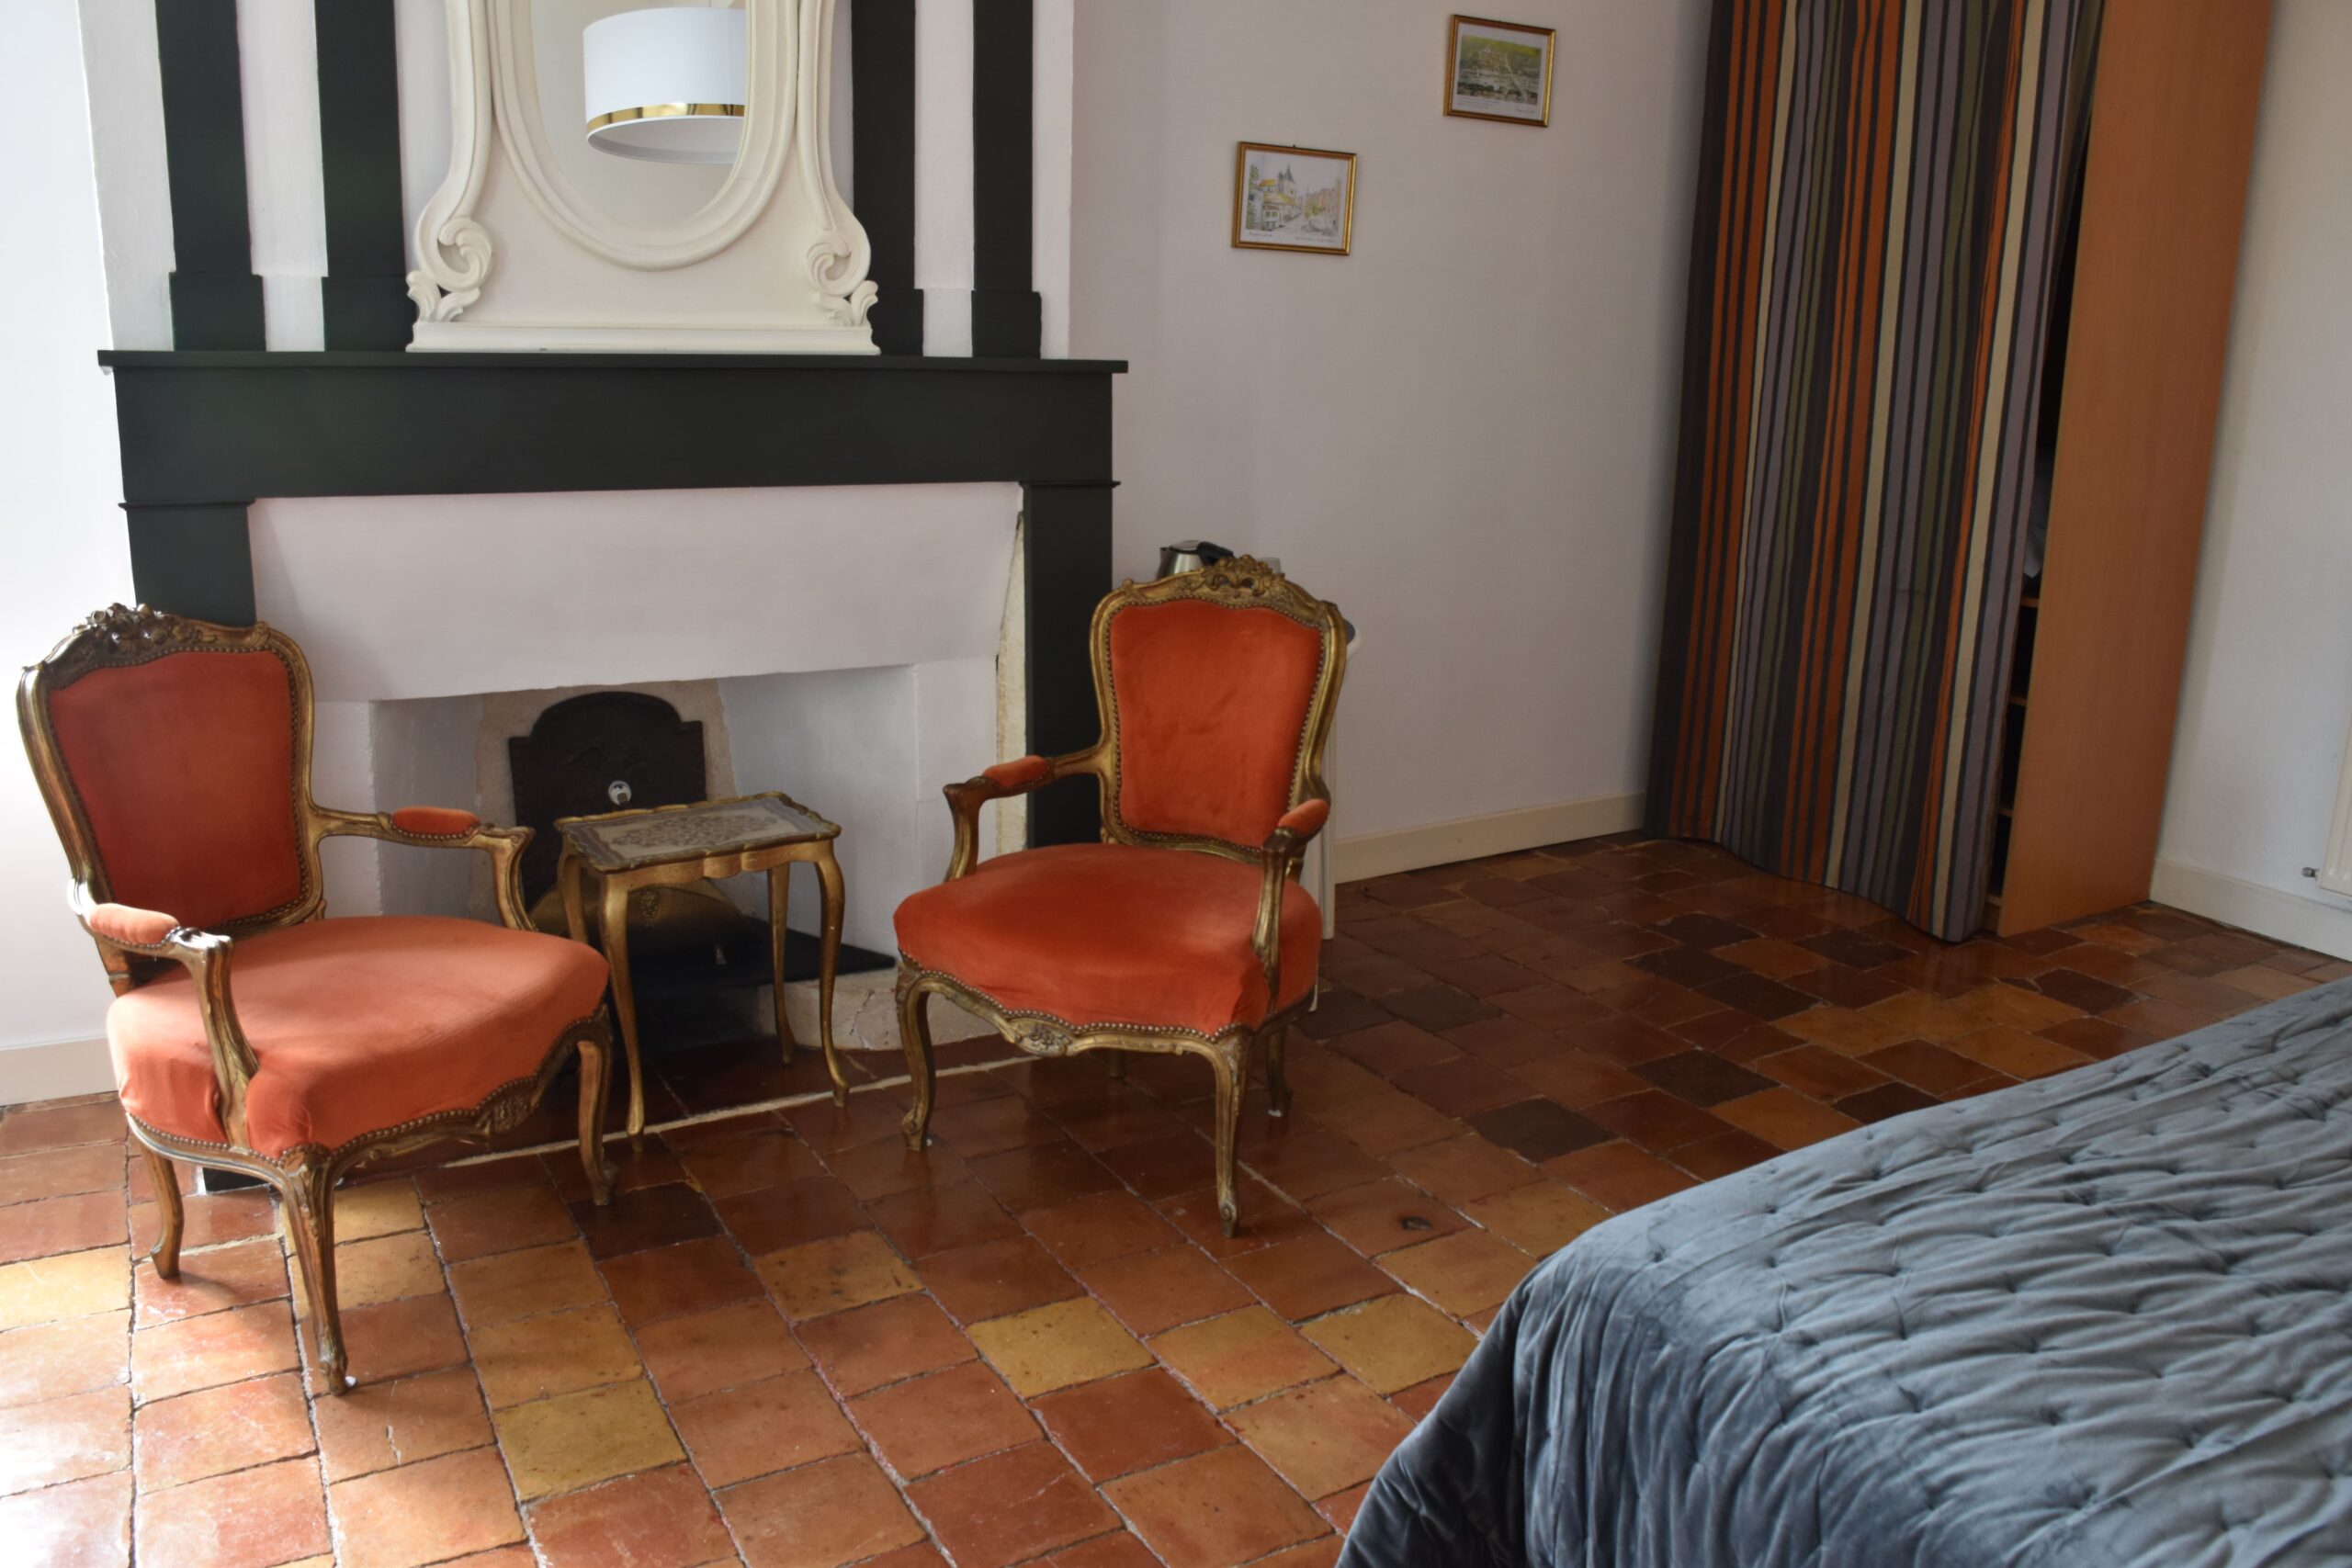 Chambre d'hôtes Les Ocres - Espace salon - Bergerac - Dordogne